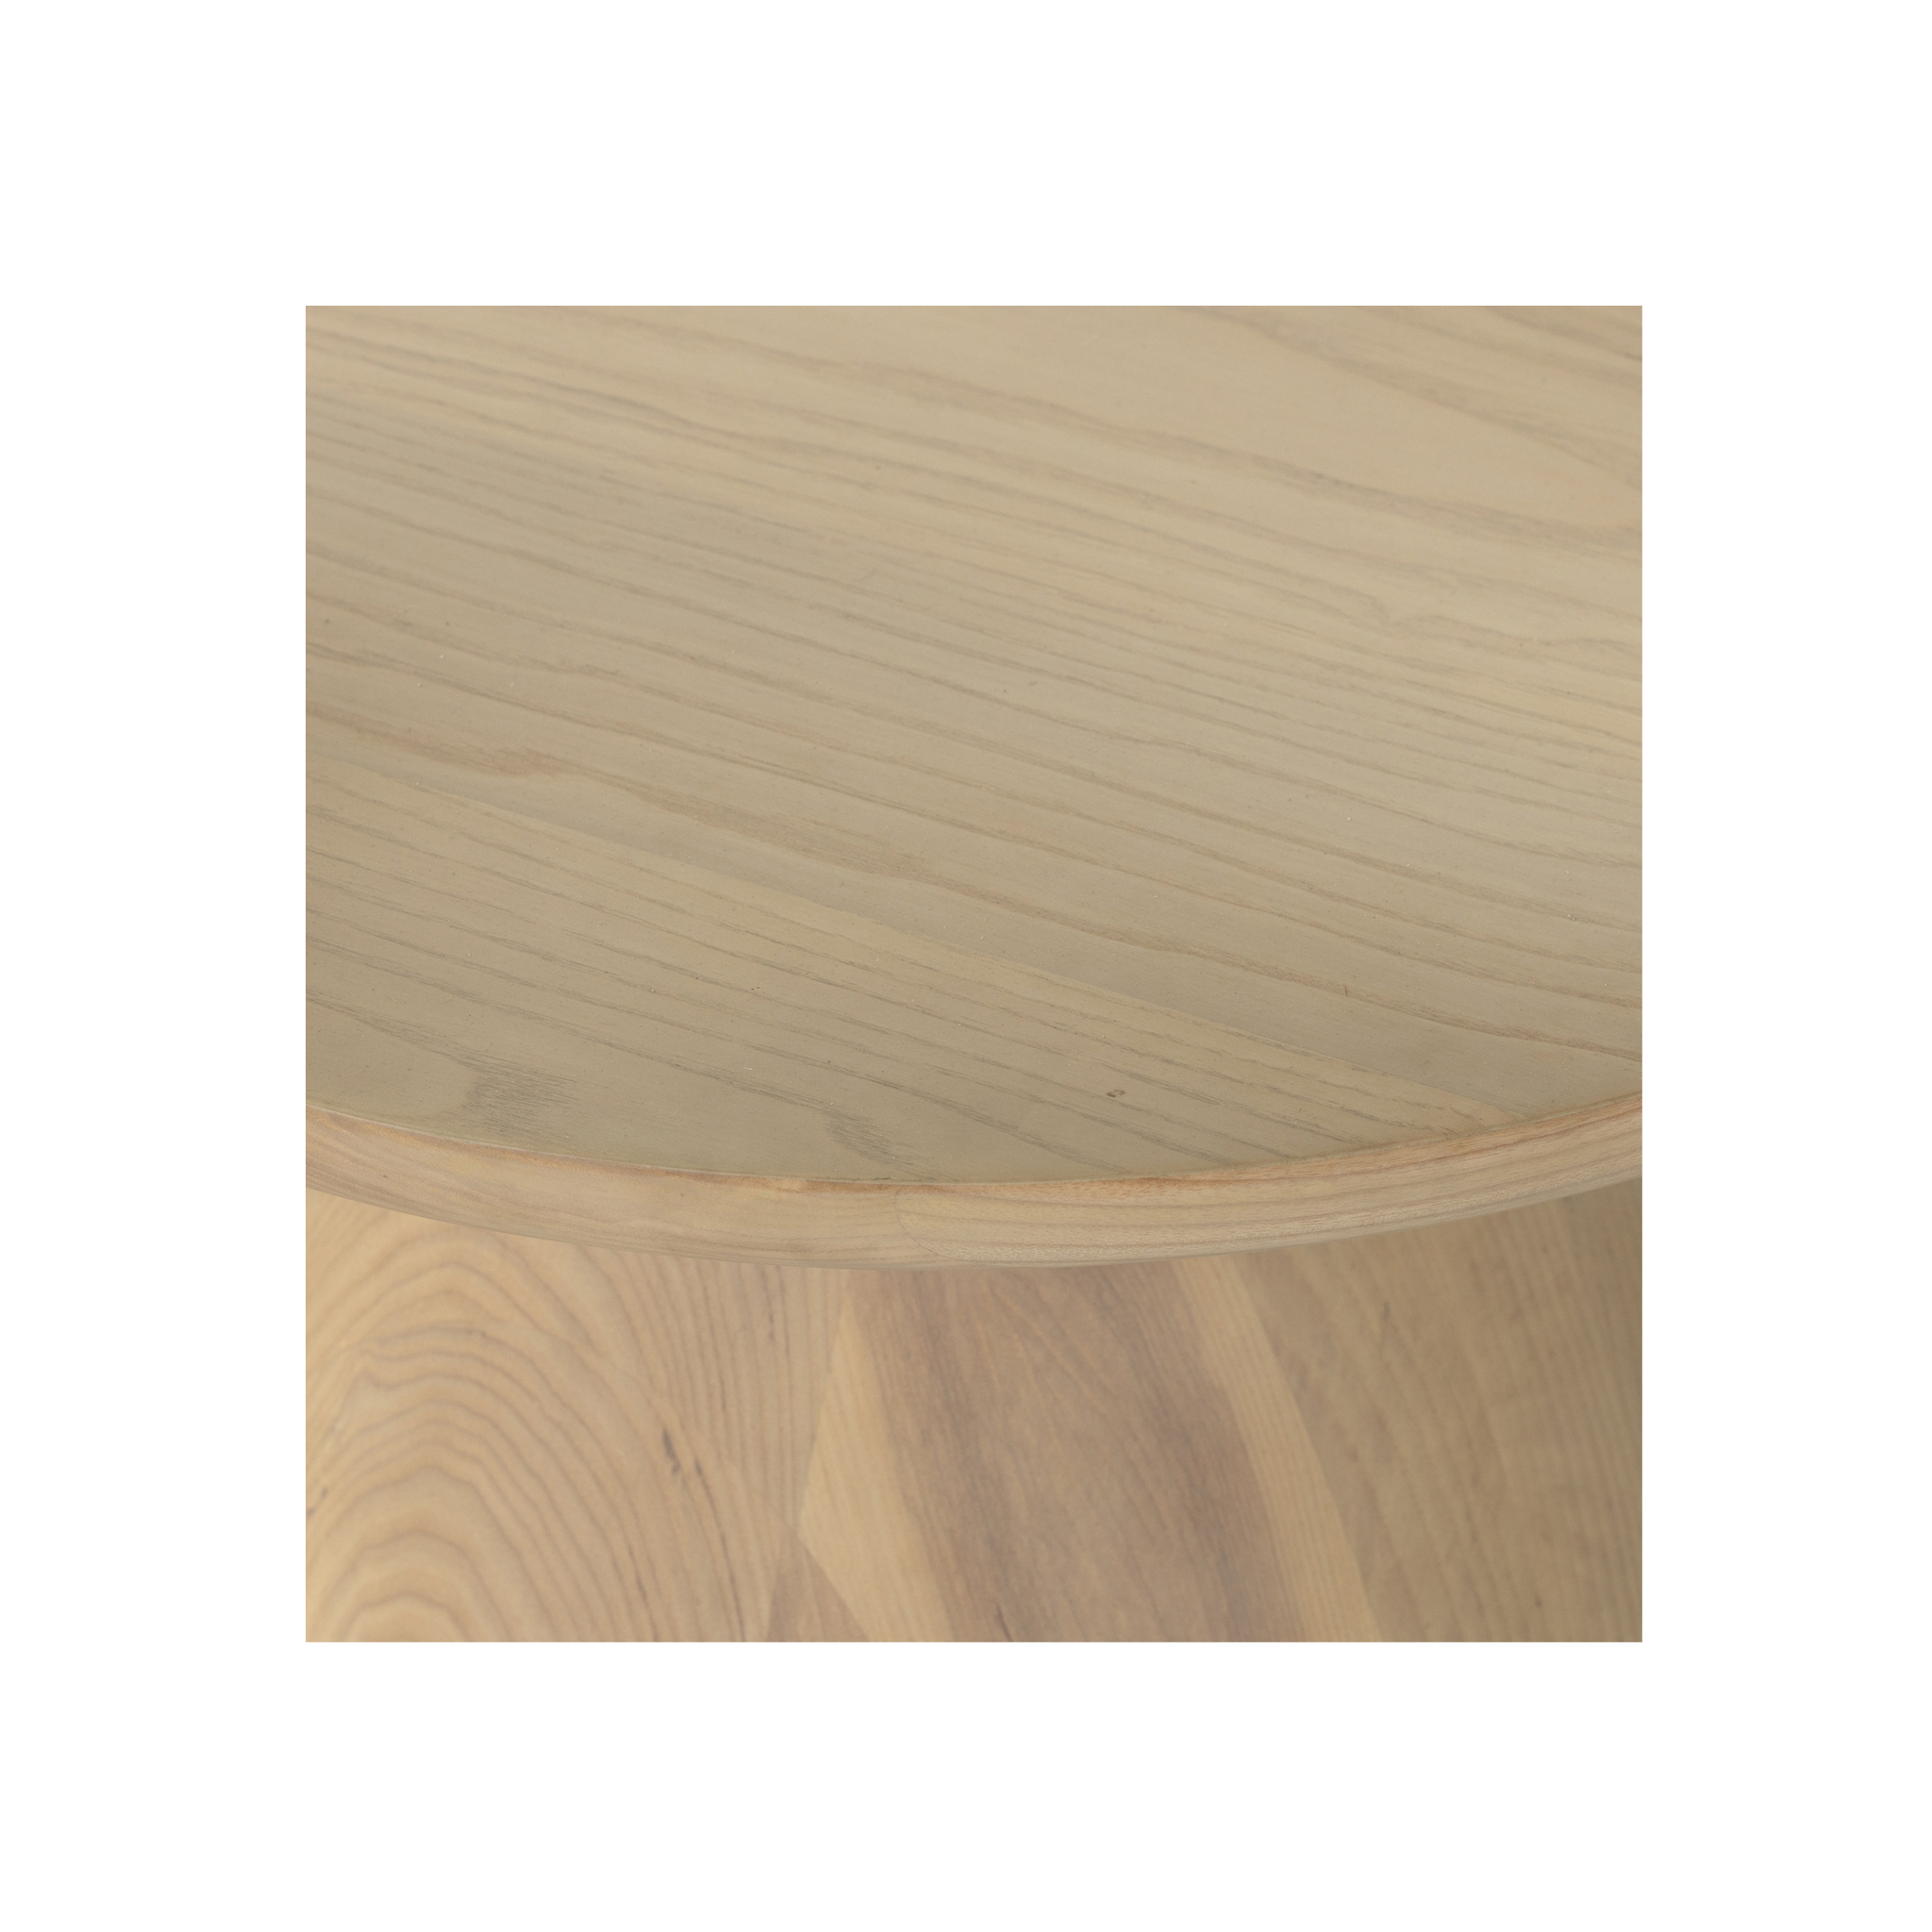 Merla Wood Coffee Table